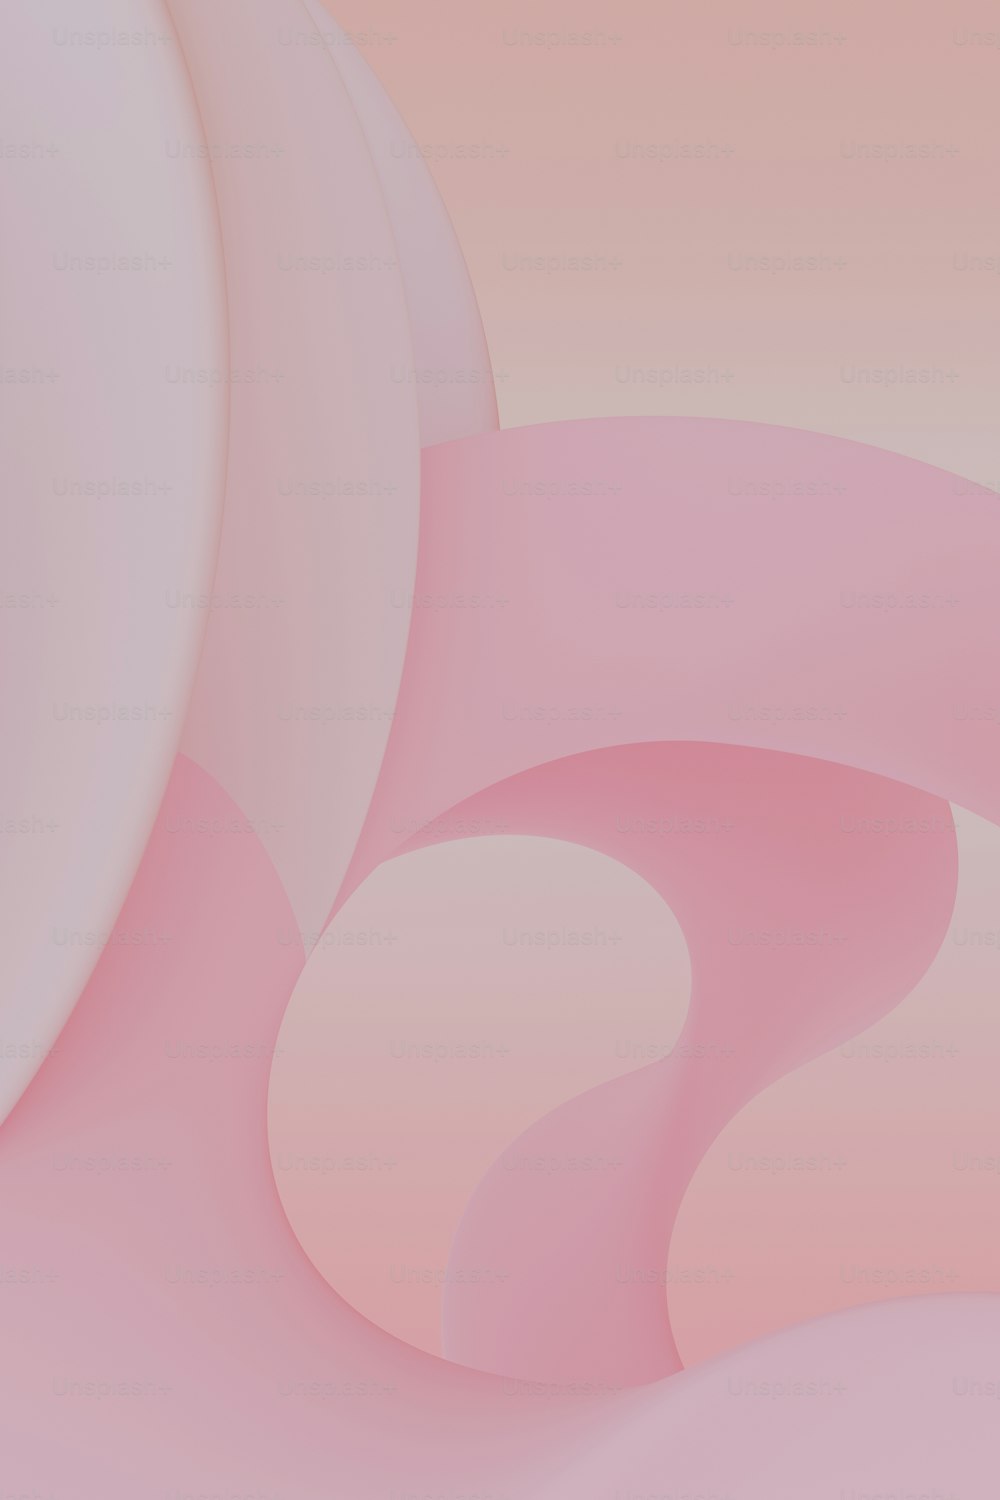 ein rosa-weißer abstrakter Hintergrund mit geschwungenen Formen